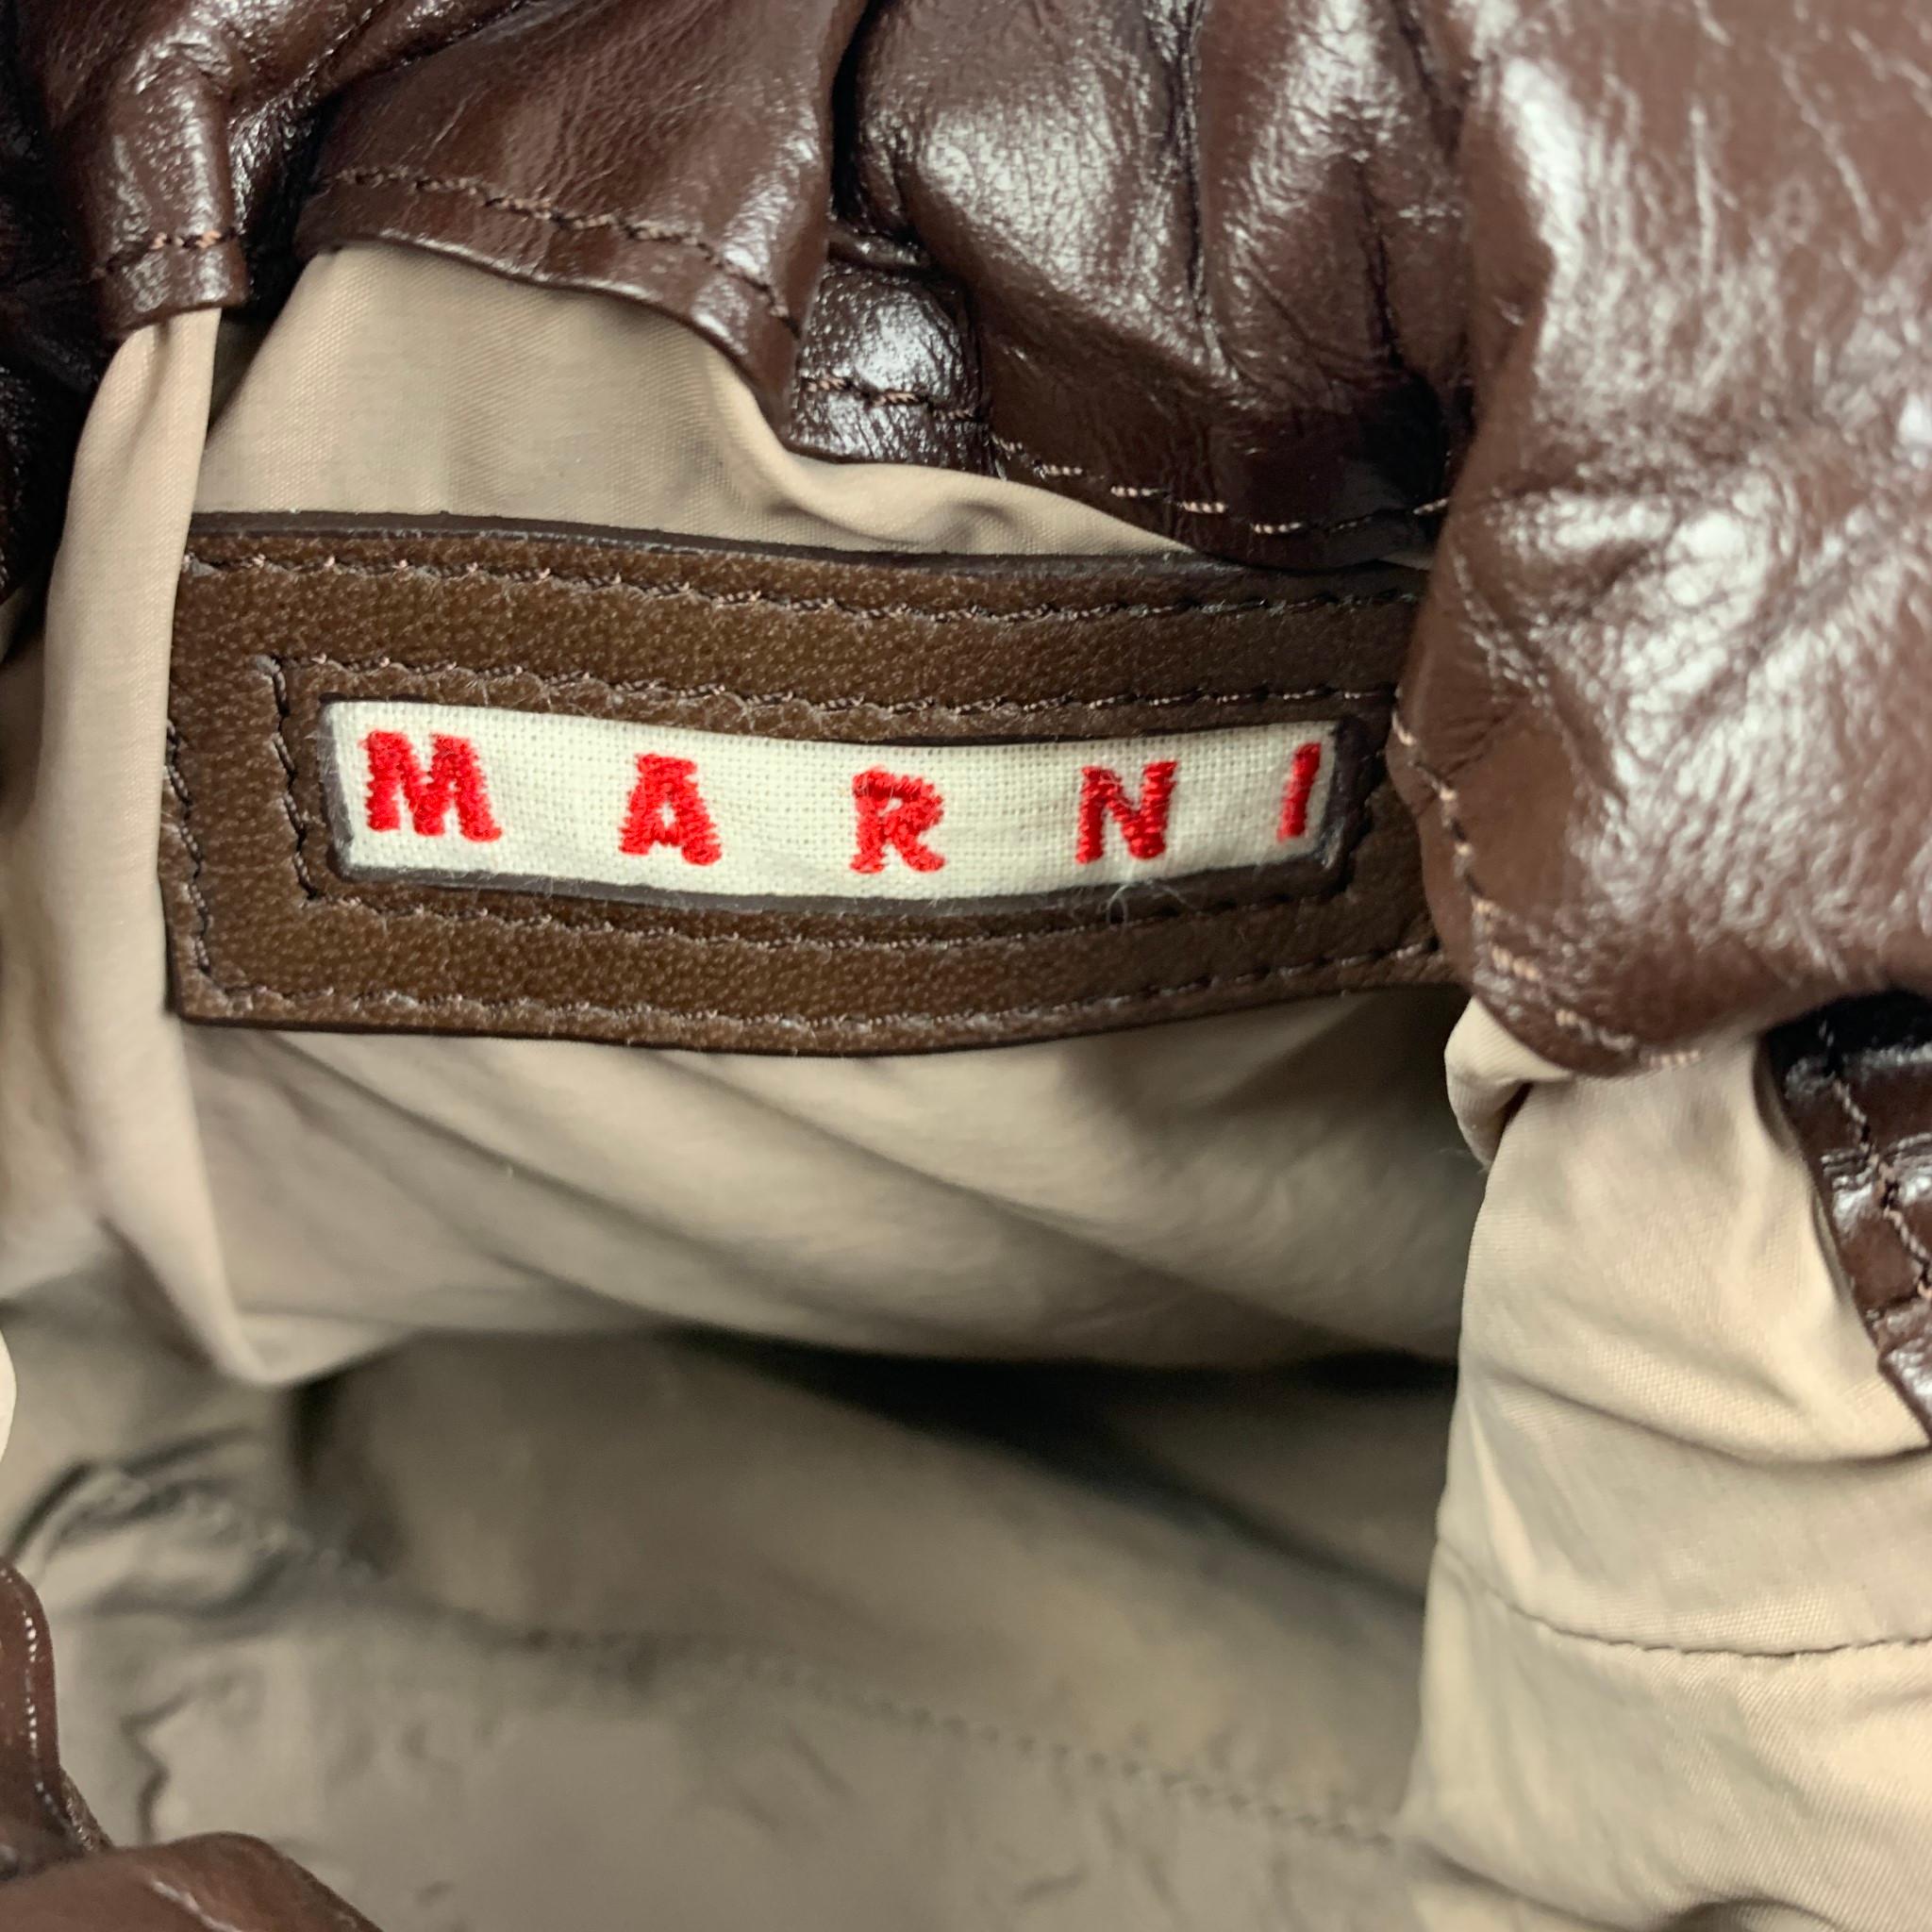 MARNI Brown Black Wrinkled Rhinestones Leather Handbag 1